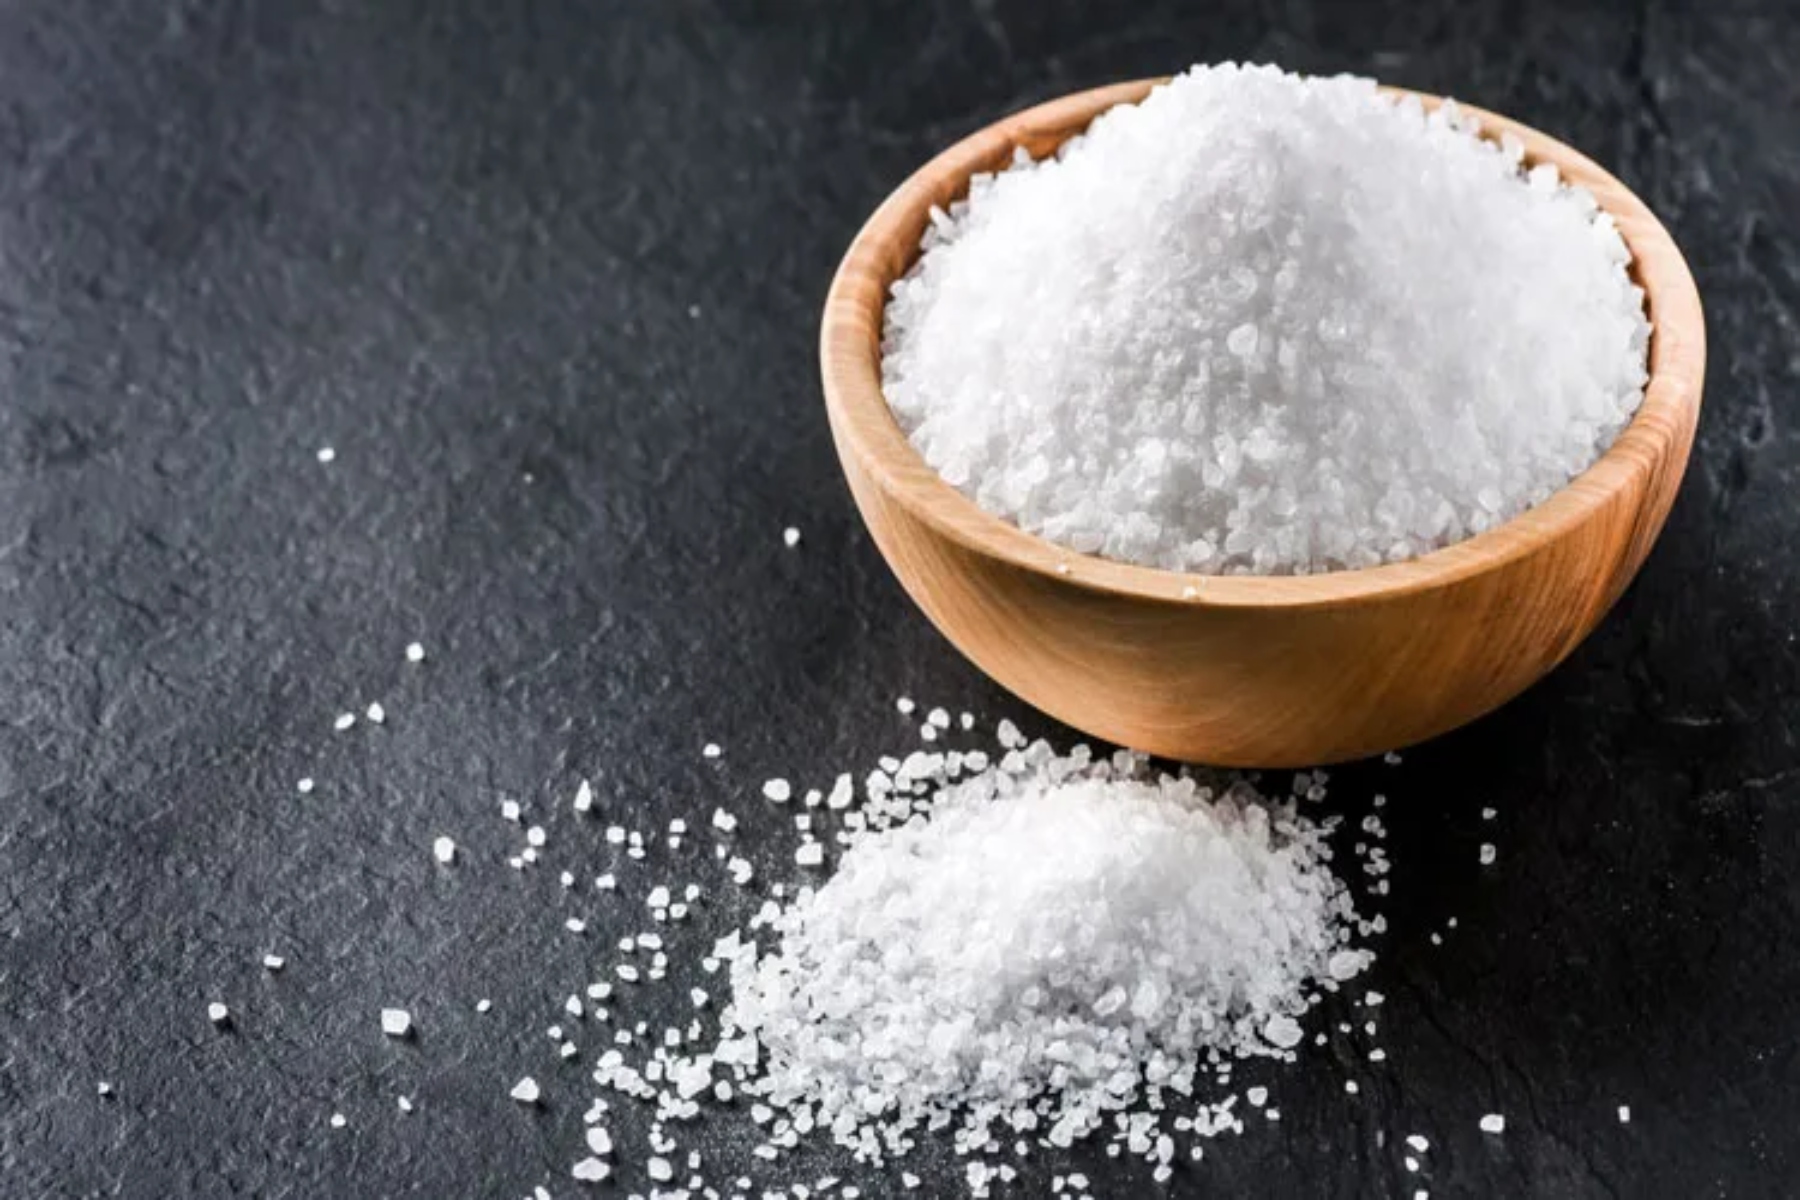 Αλάτι: Το πολύ αλάτι αποδυναμώνει το ανοσοποιητικό σύστημα